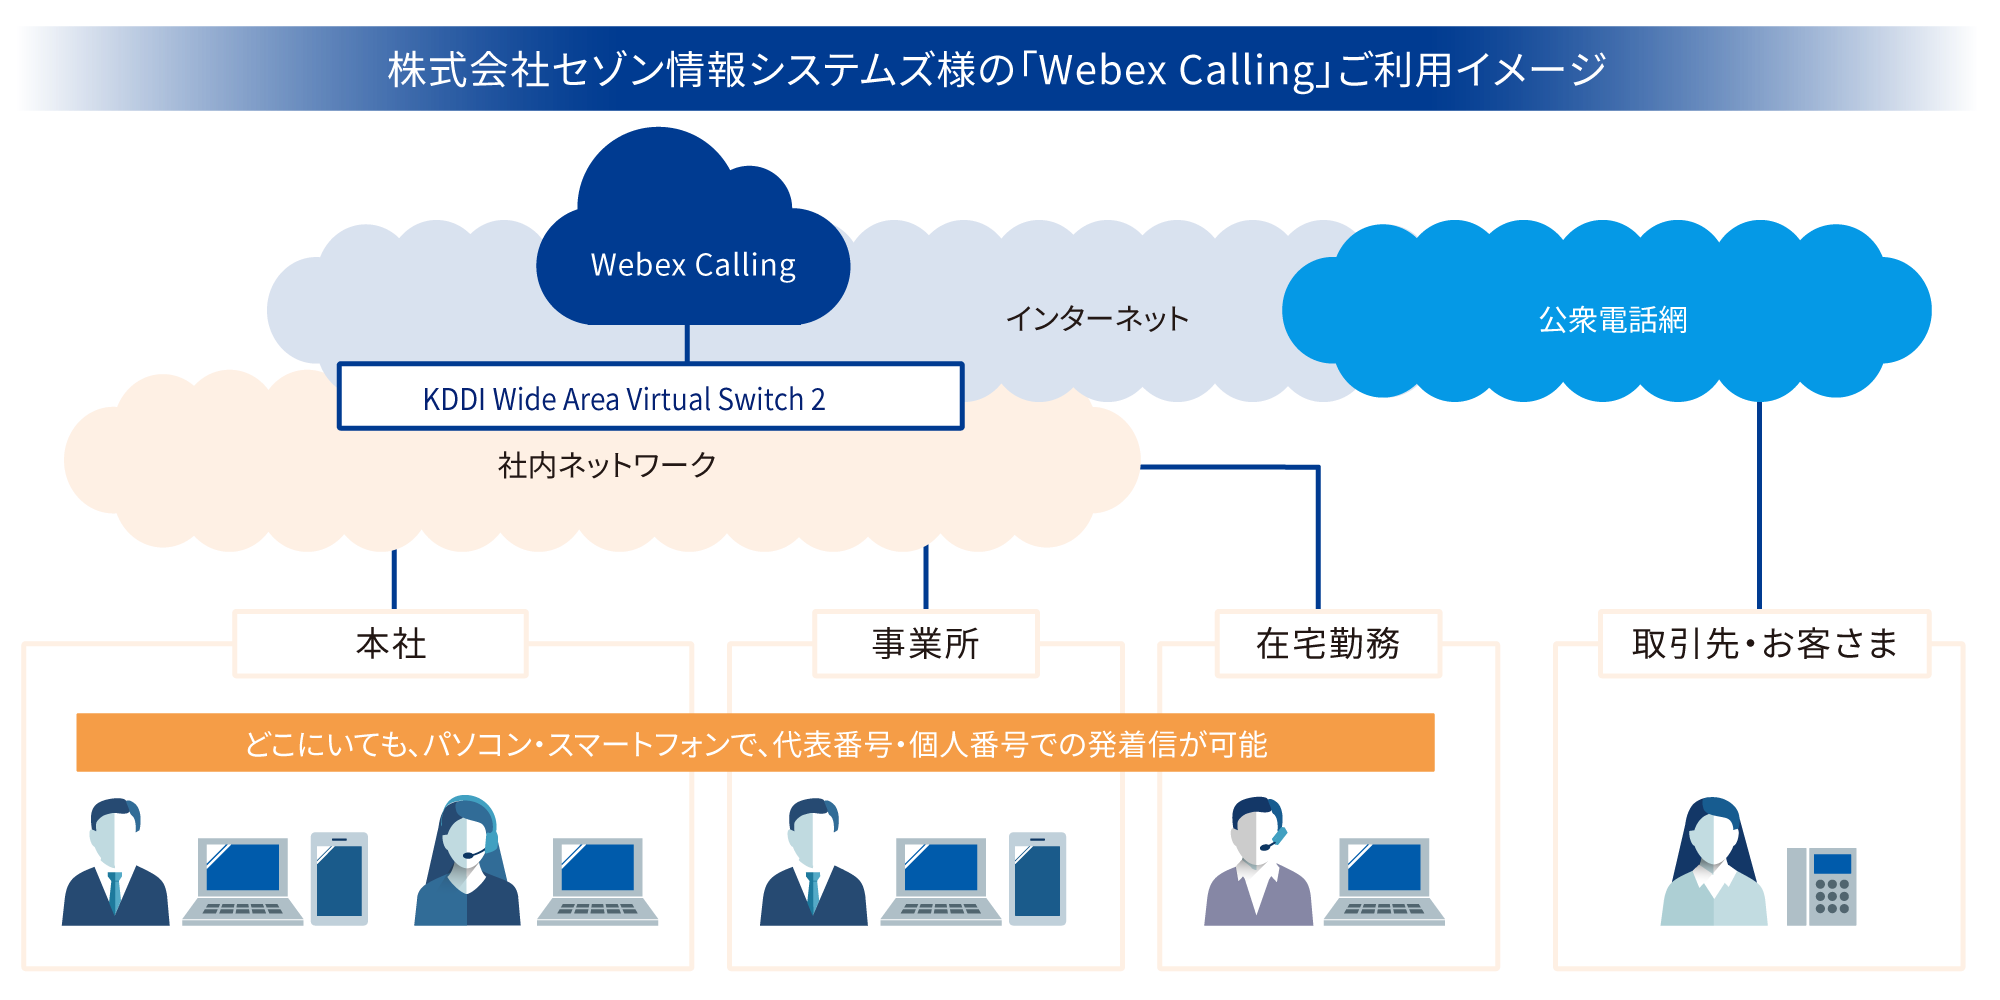 株式会社セゾン情報システムズ様の「Webex Calling」ご利用イメージ図 どこにいても、パソコン・スマートフォンで、代表番号・個人番号での発着信が可能に。